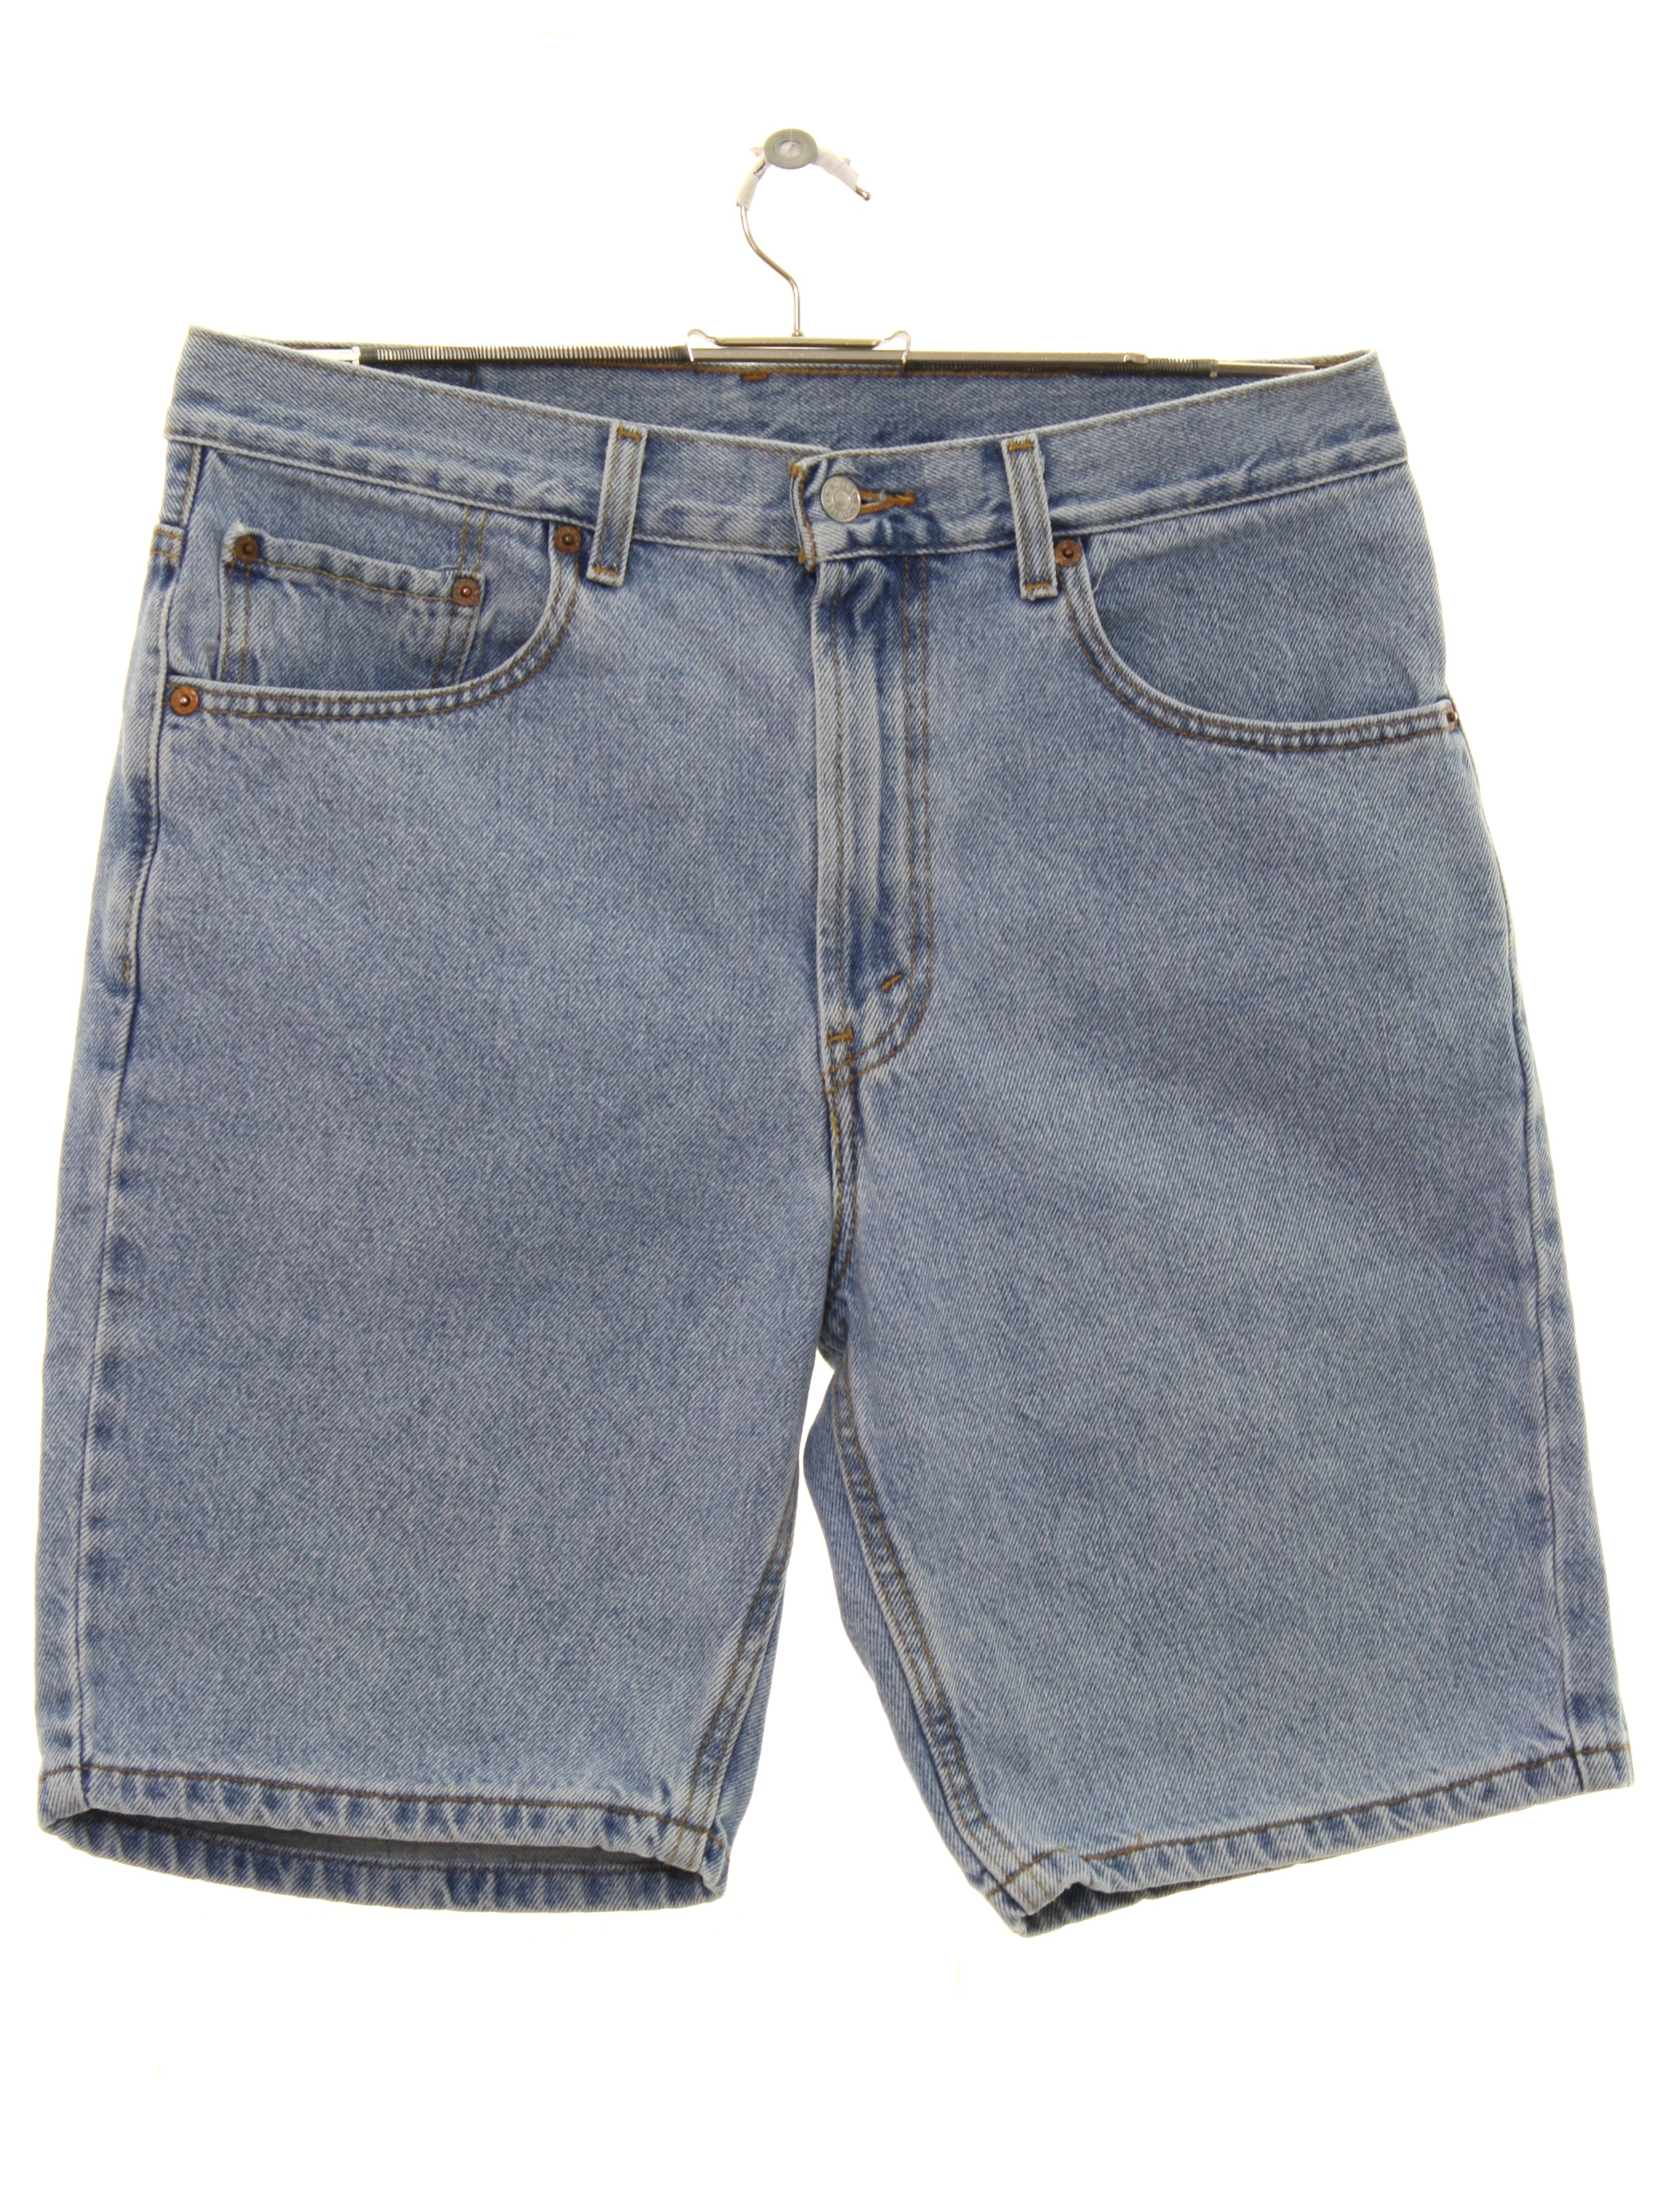 Retro 1990's Shorts (Levis 505) : 90s -Levis 505- Mens light blue ...